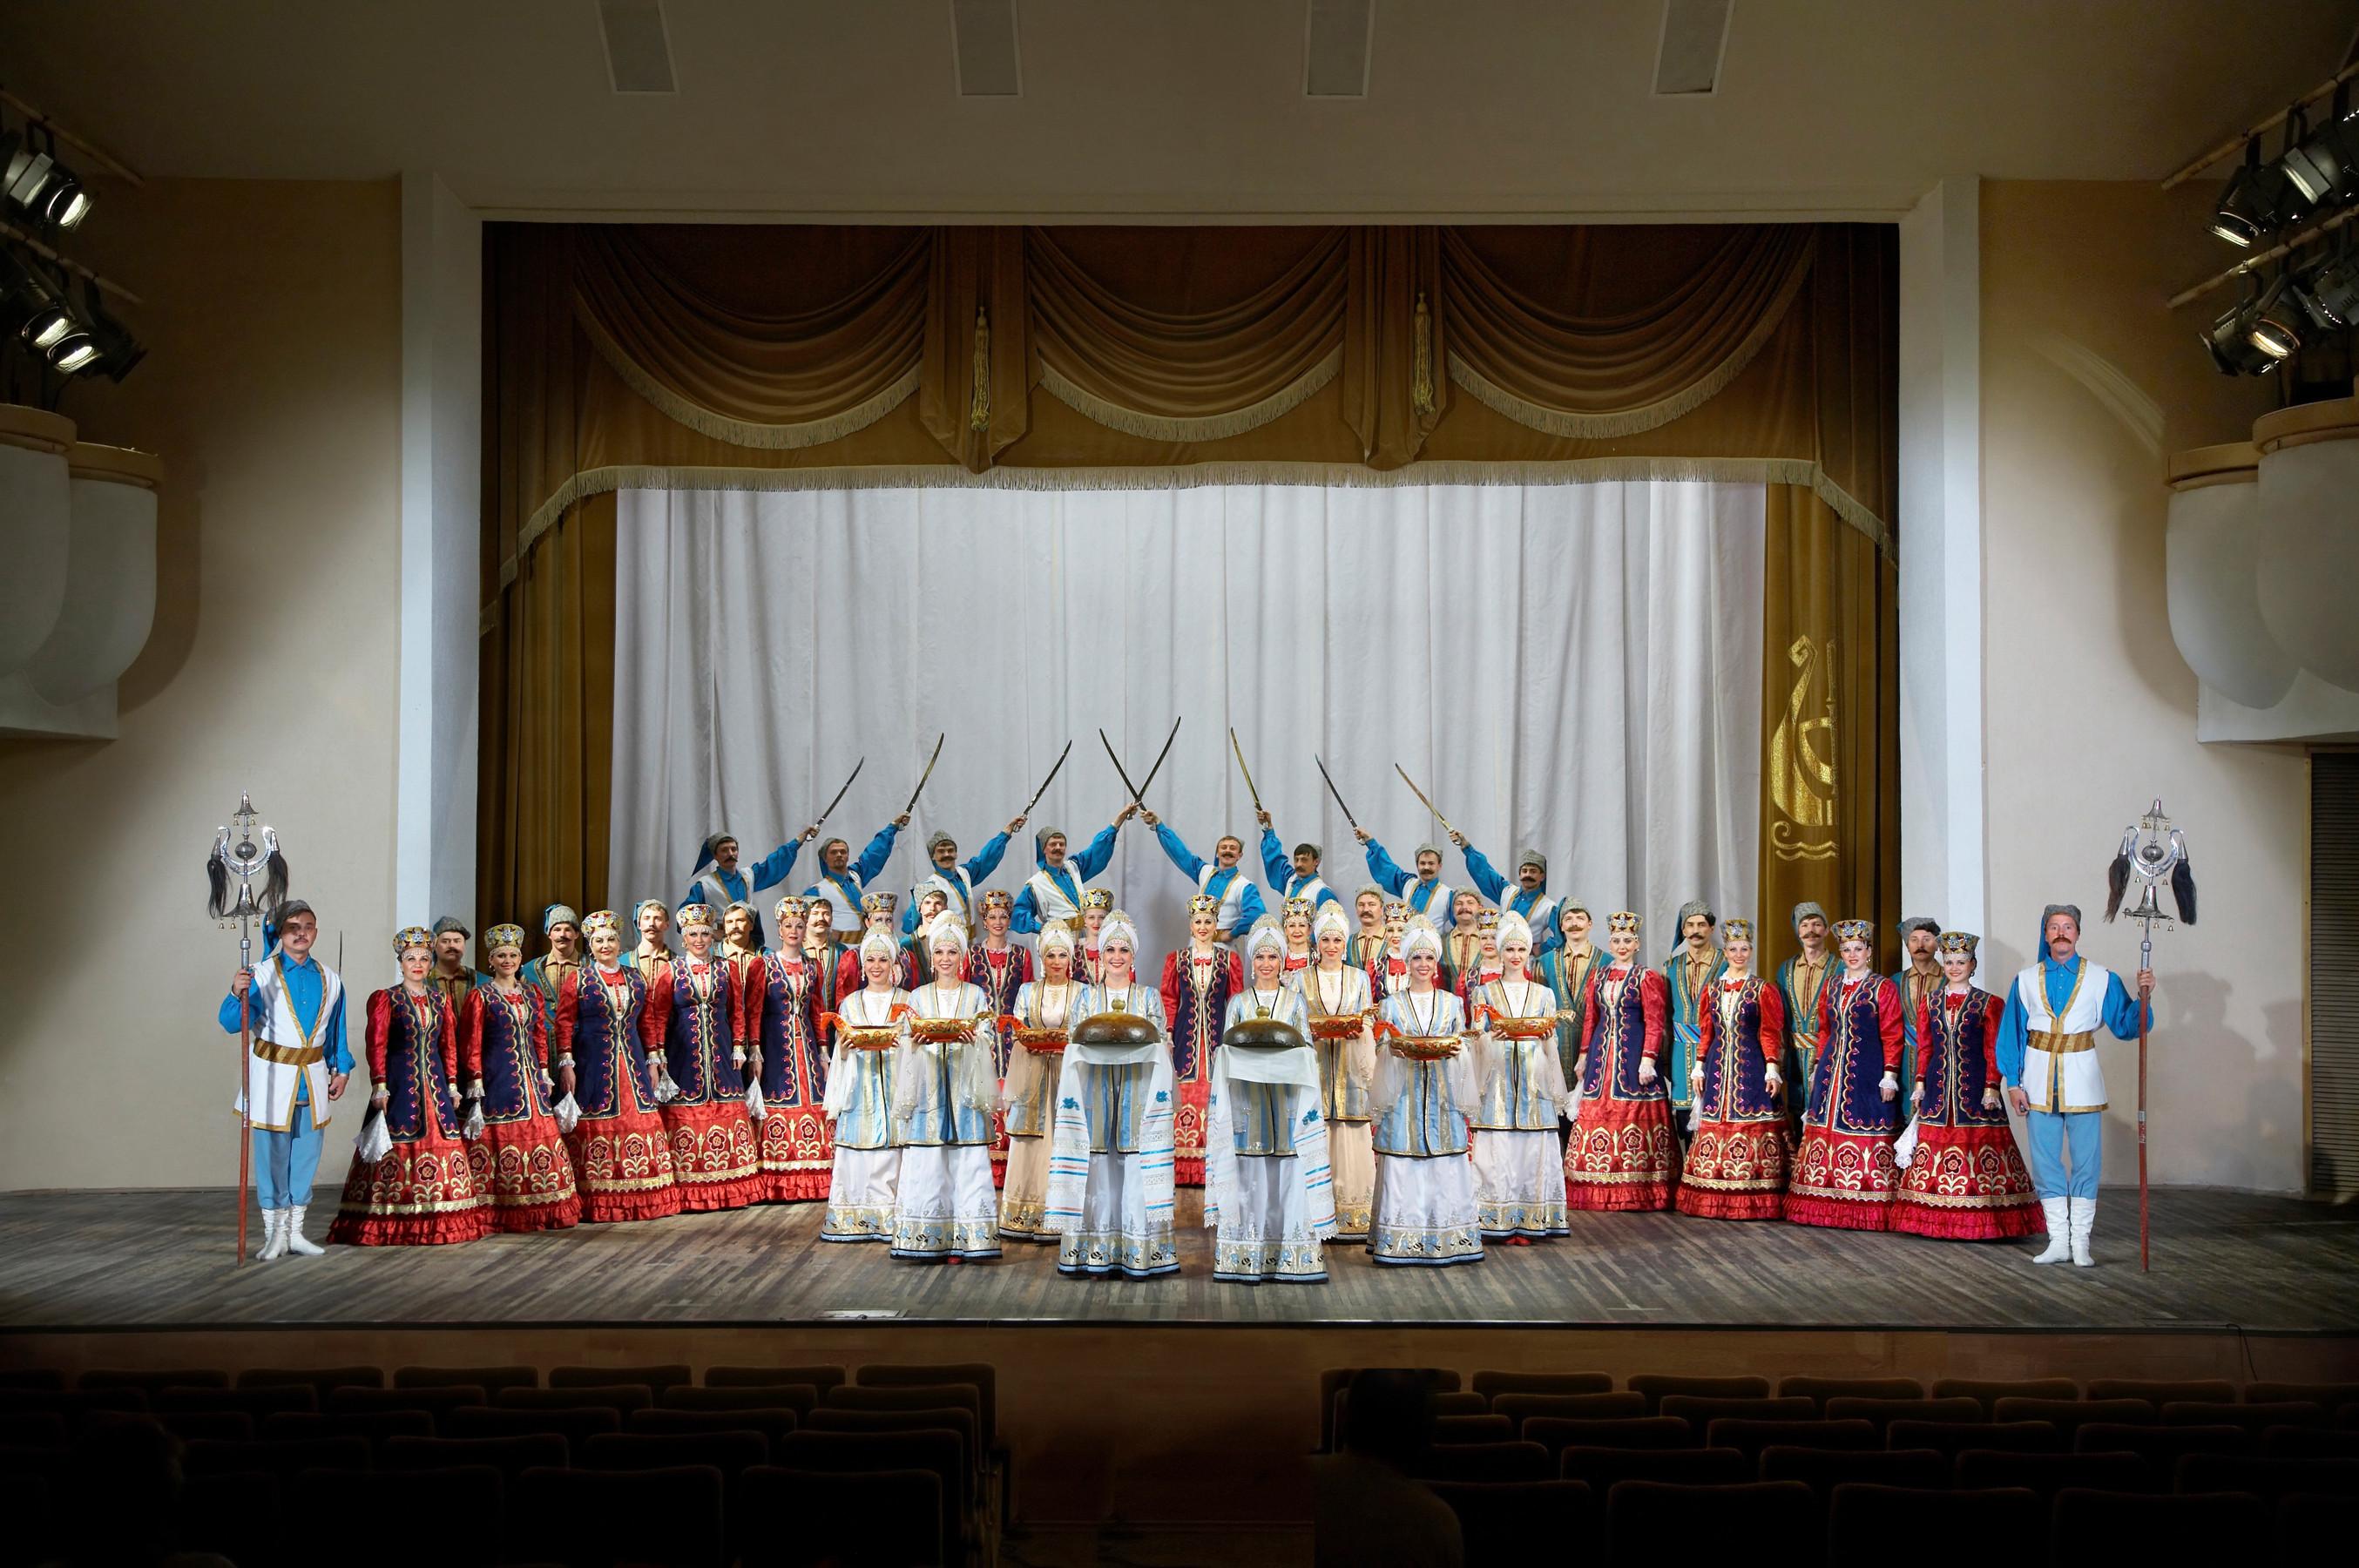 康乐及文化事务署五月下旬将呈献两场顿河哥萨克国立民族歌舞团的精湛演出。图示顿河哥萨克国立民族歌舞团过往演出剧照。